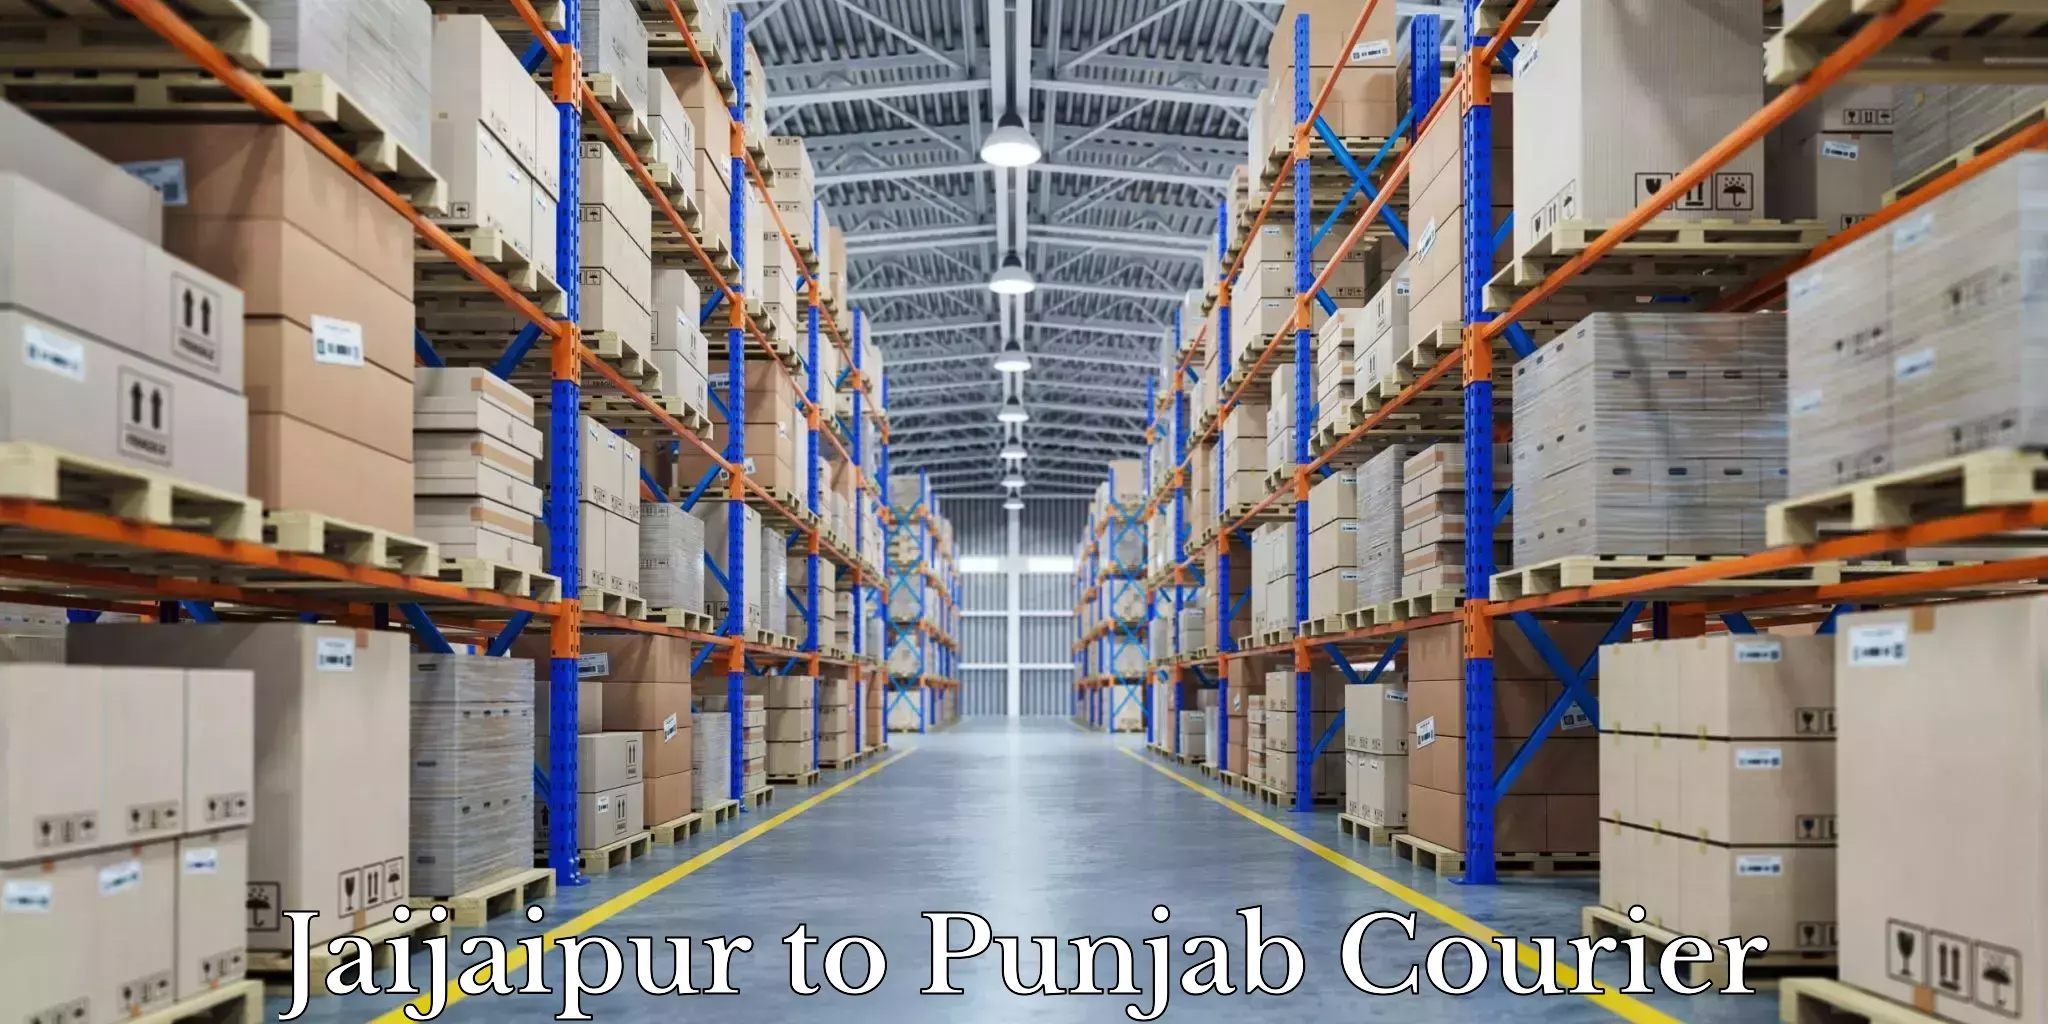 Furniture transport experts Jaijaipur to Nawanshahr